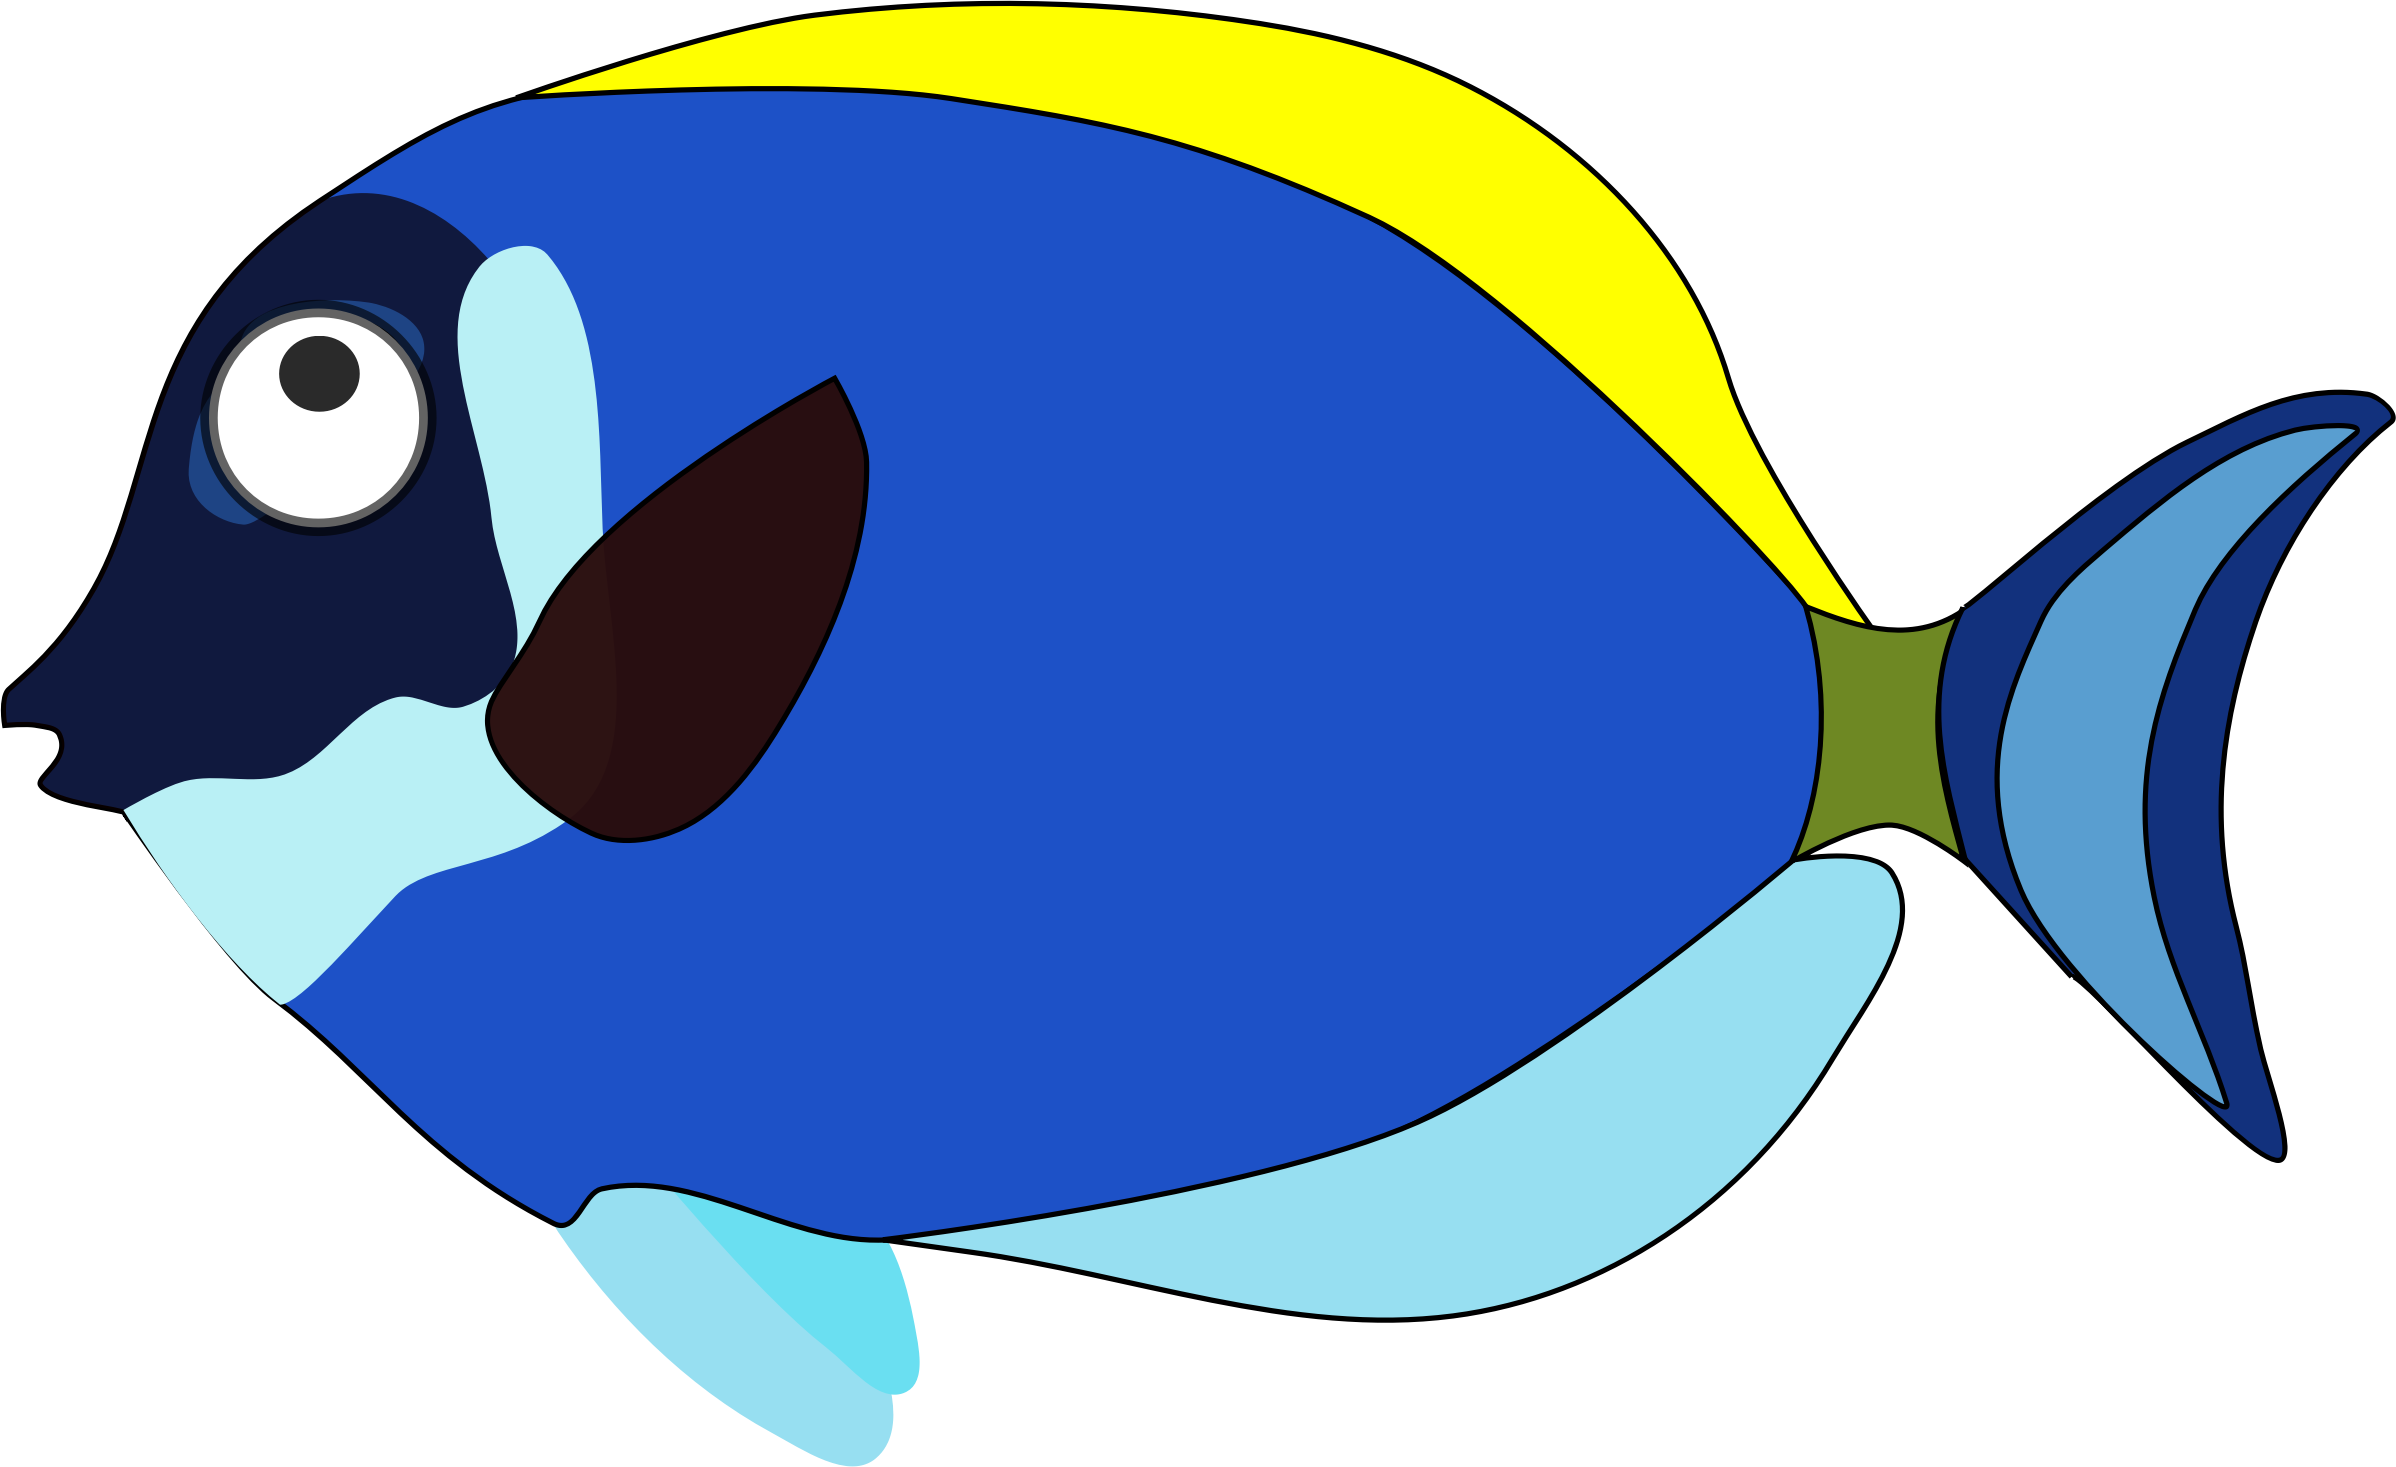 Blue Cartoon Fish Clipart Best